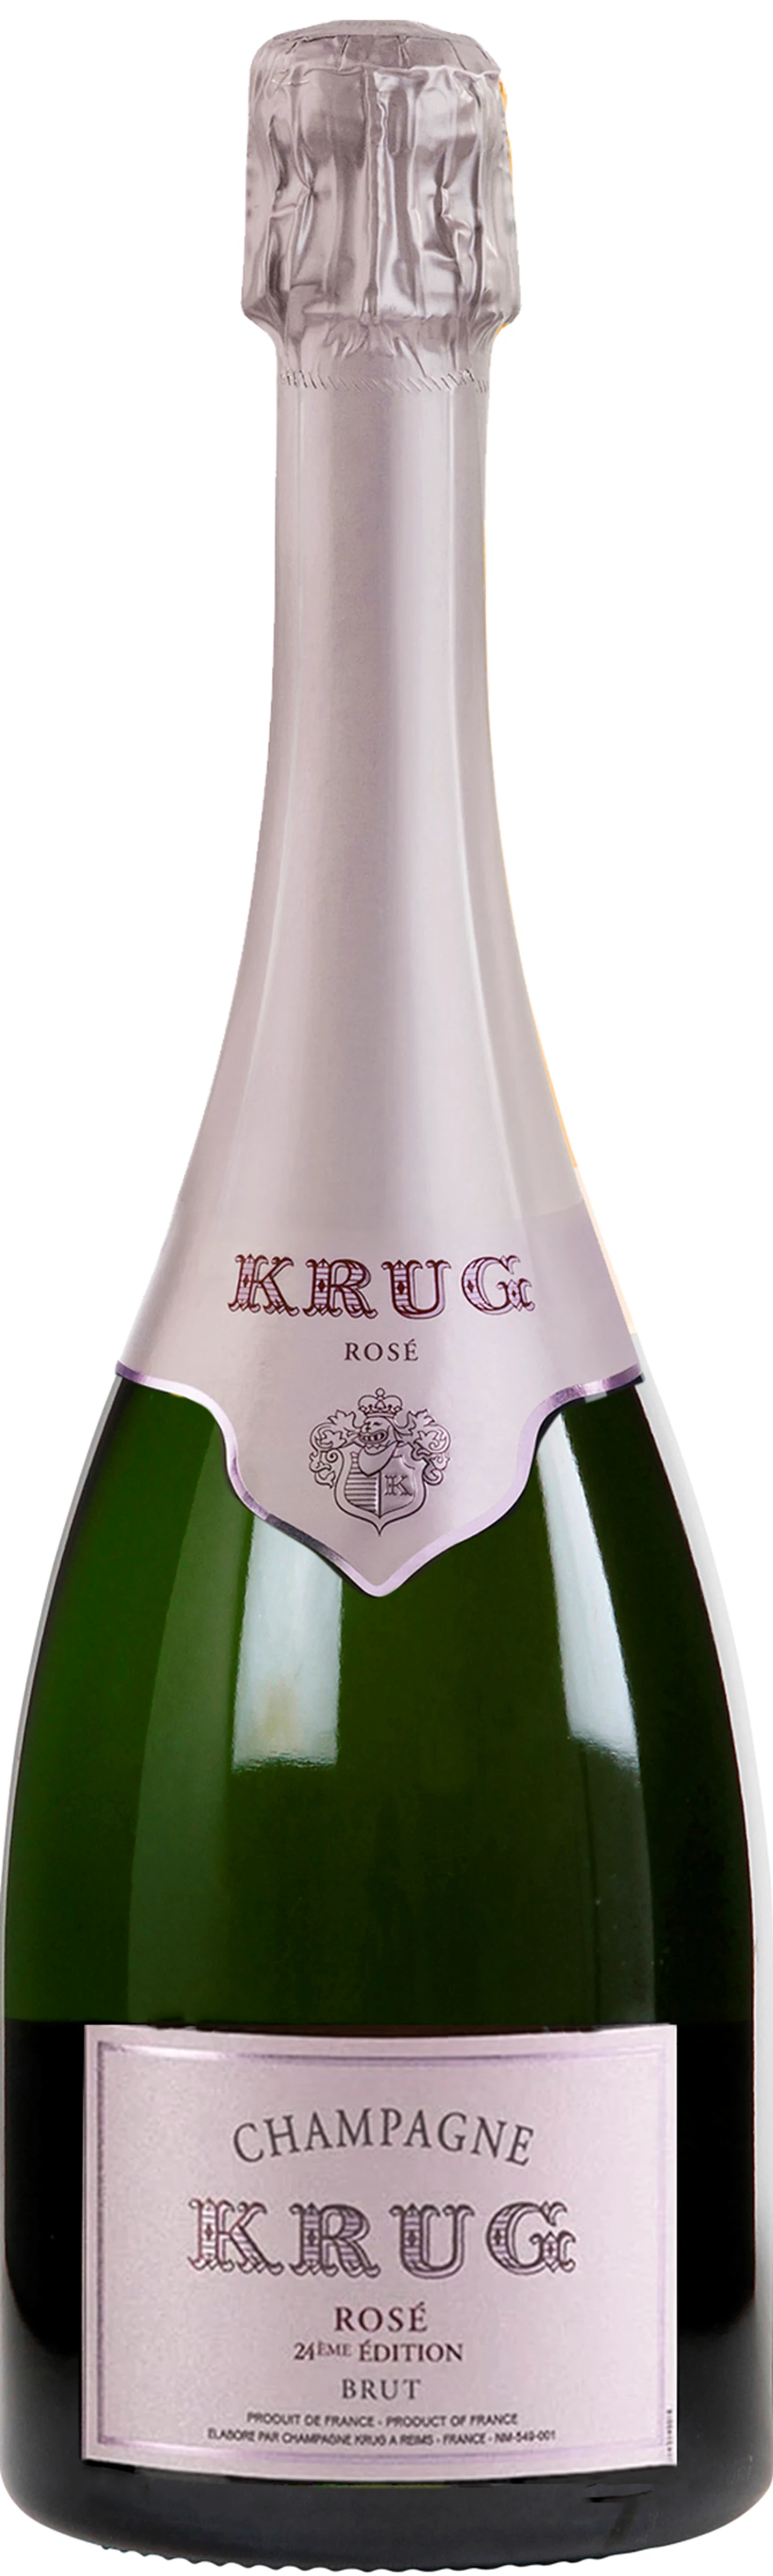 Krug-Champagne-rose-brut-24edition-NV